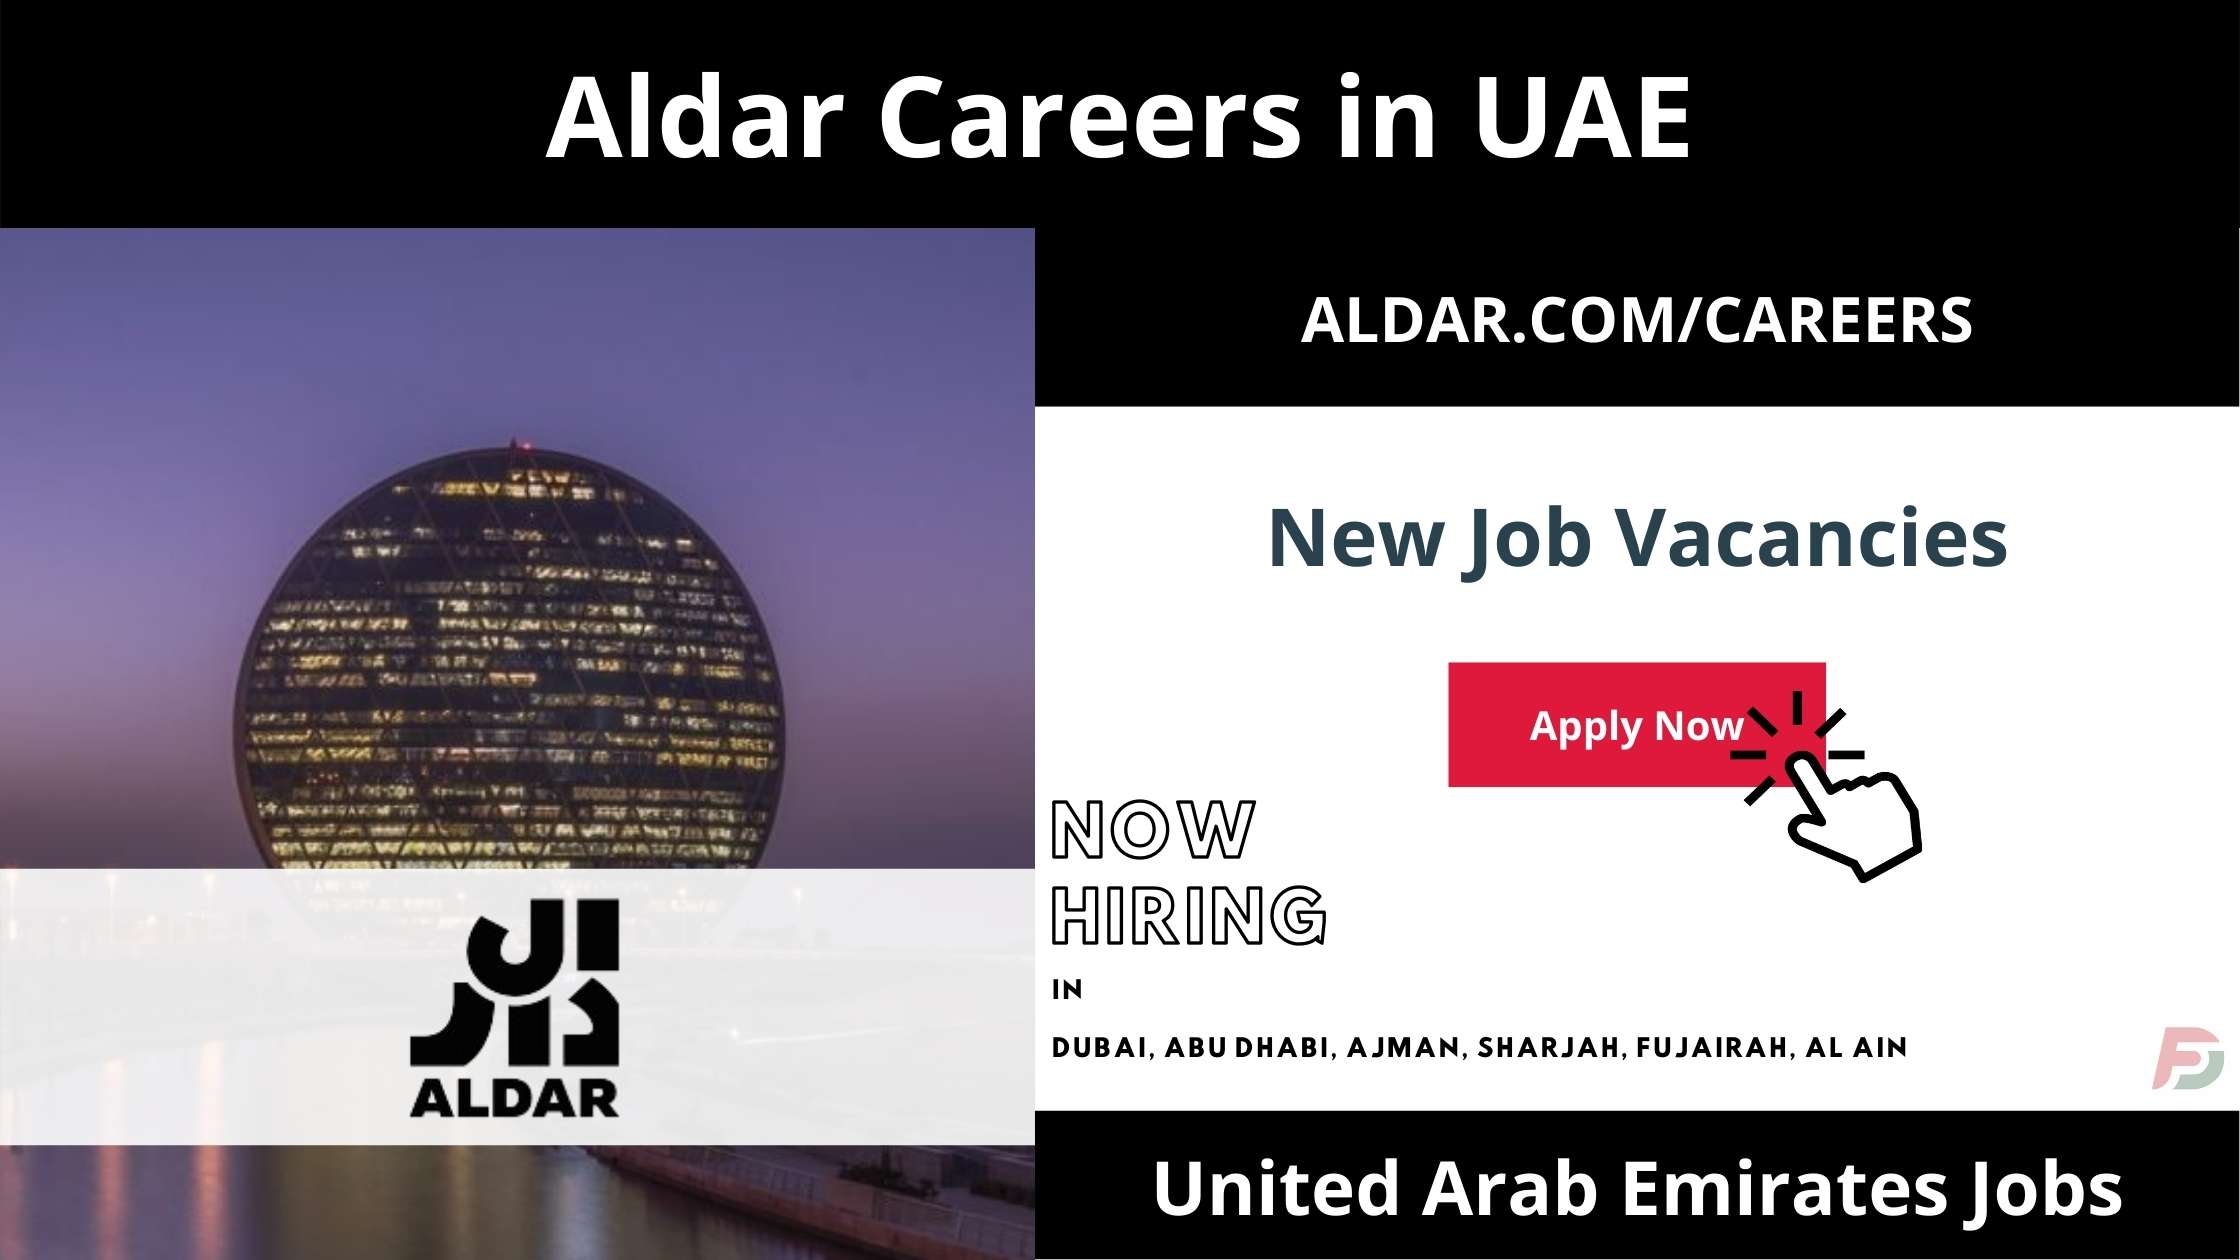 Aldar Careers in UAE